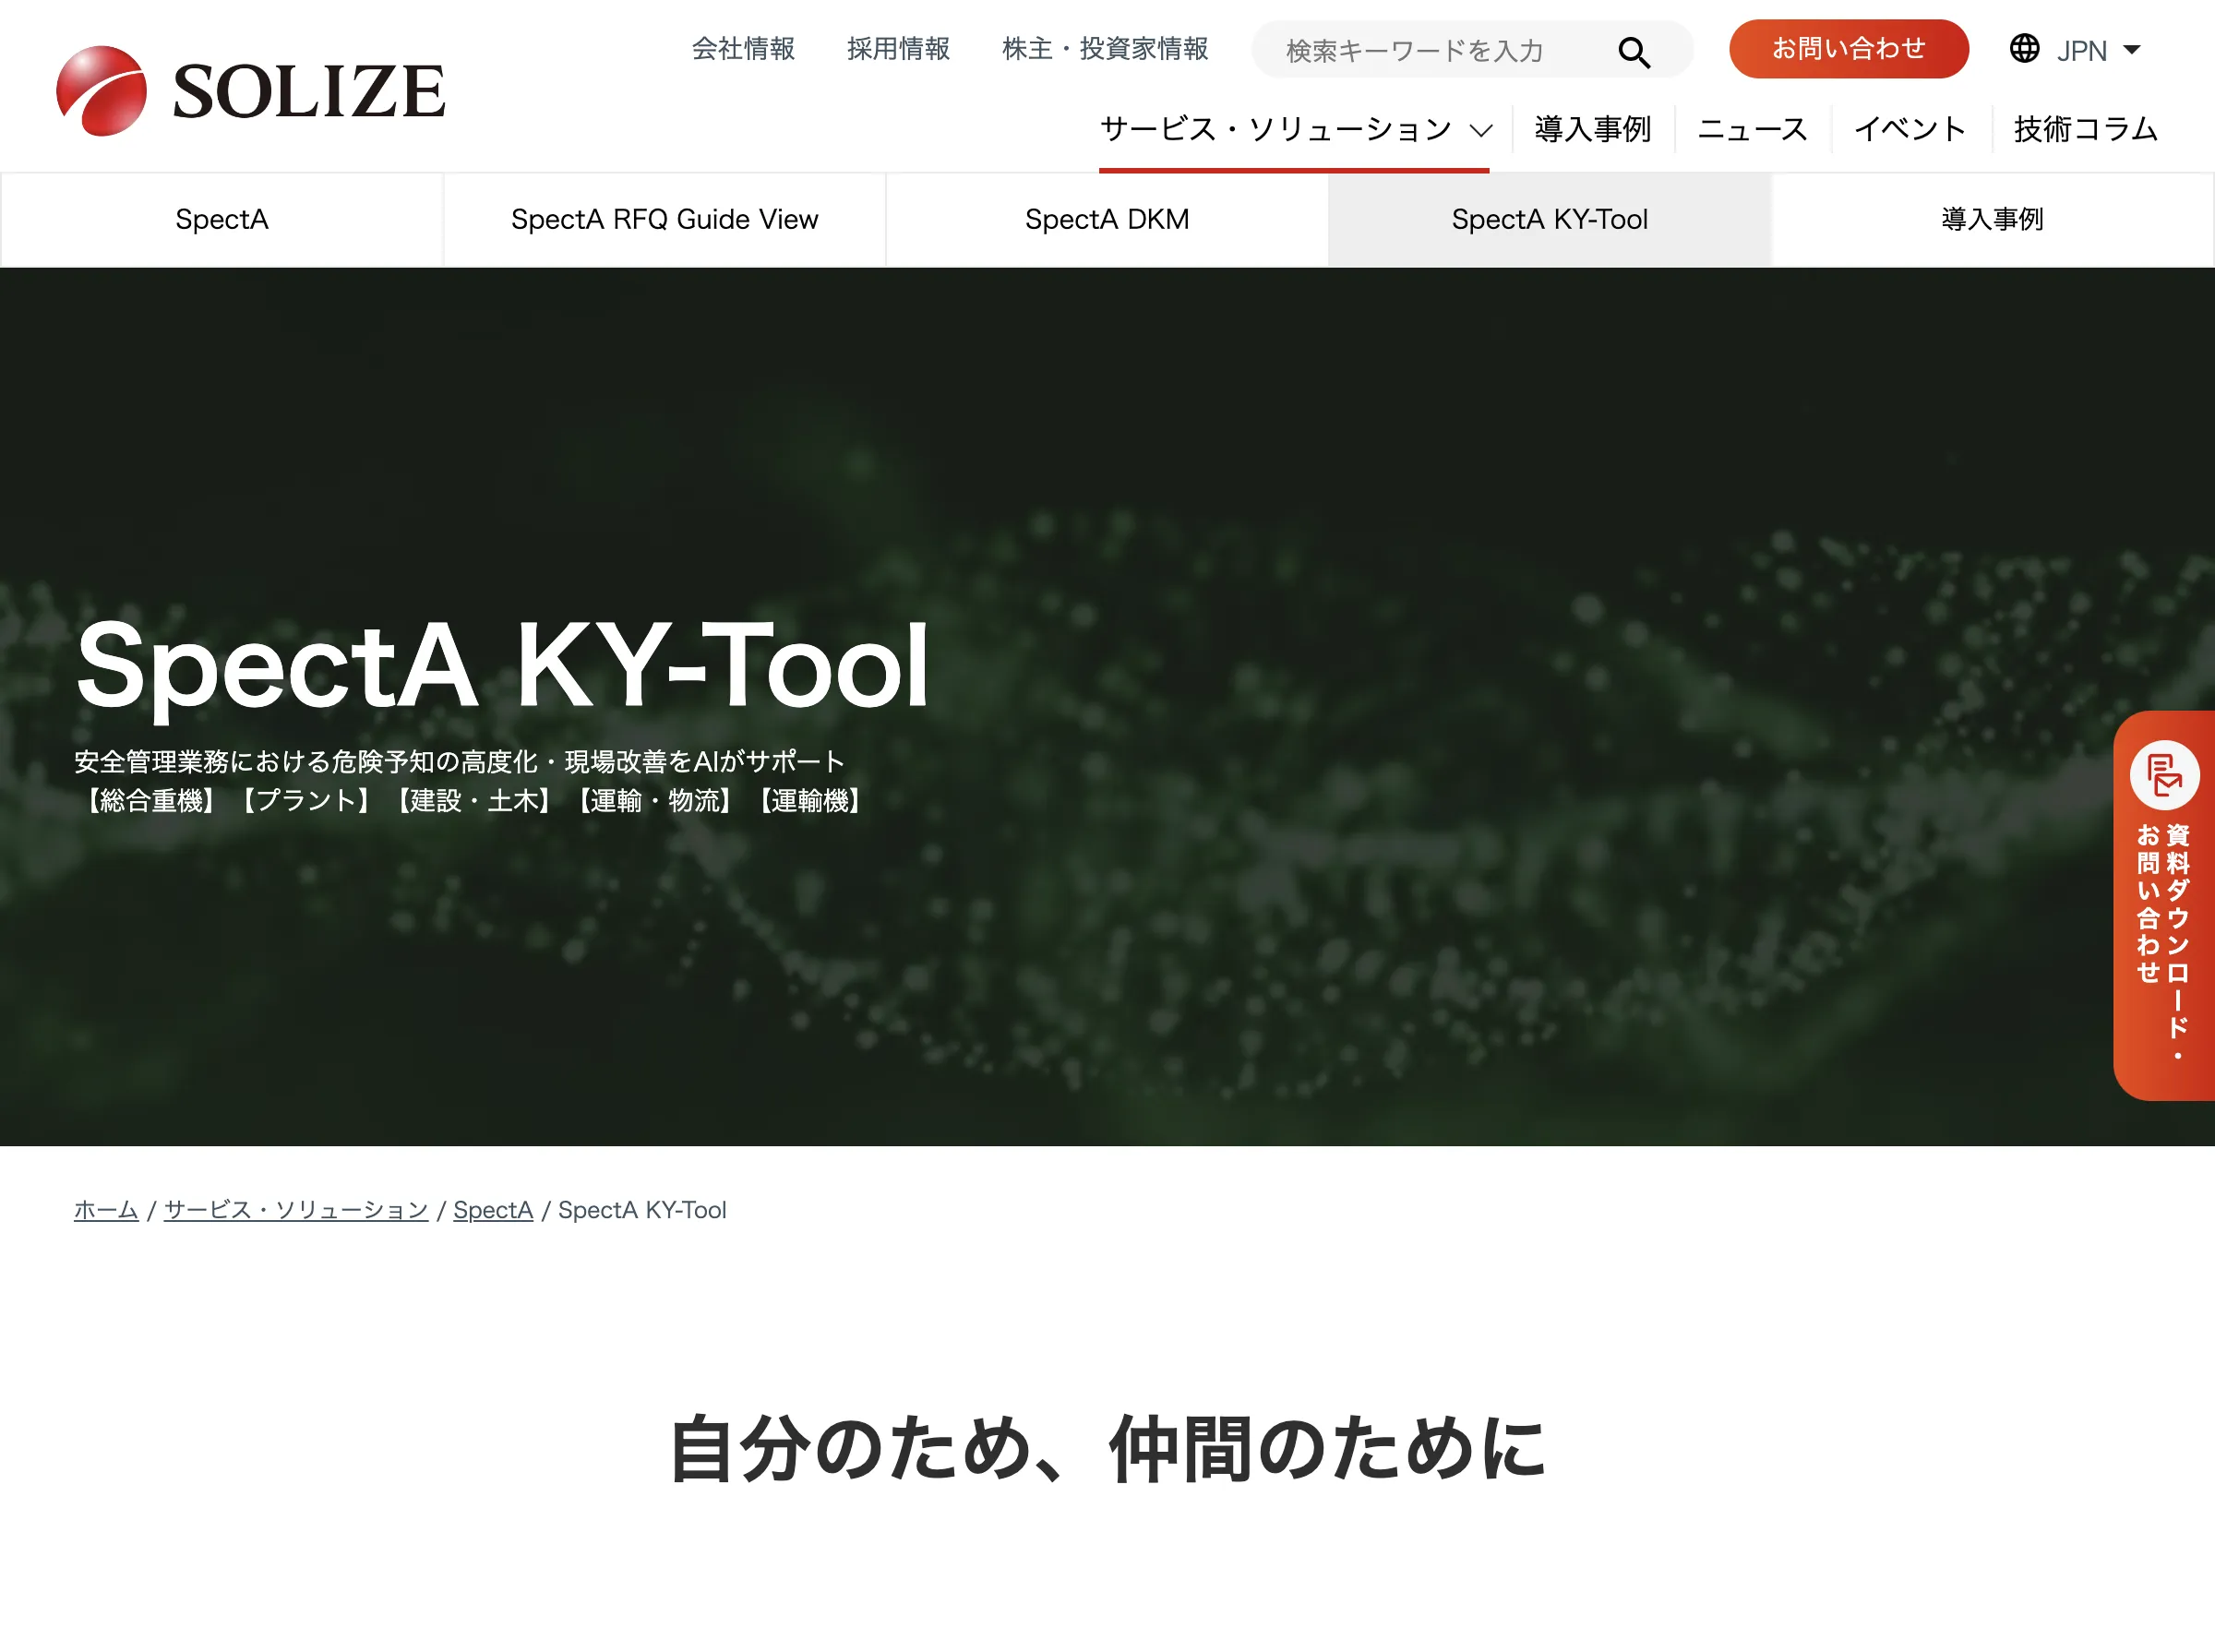 SpectA KY-Toolの紹介画像